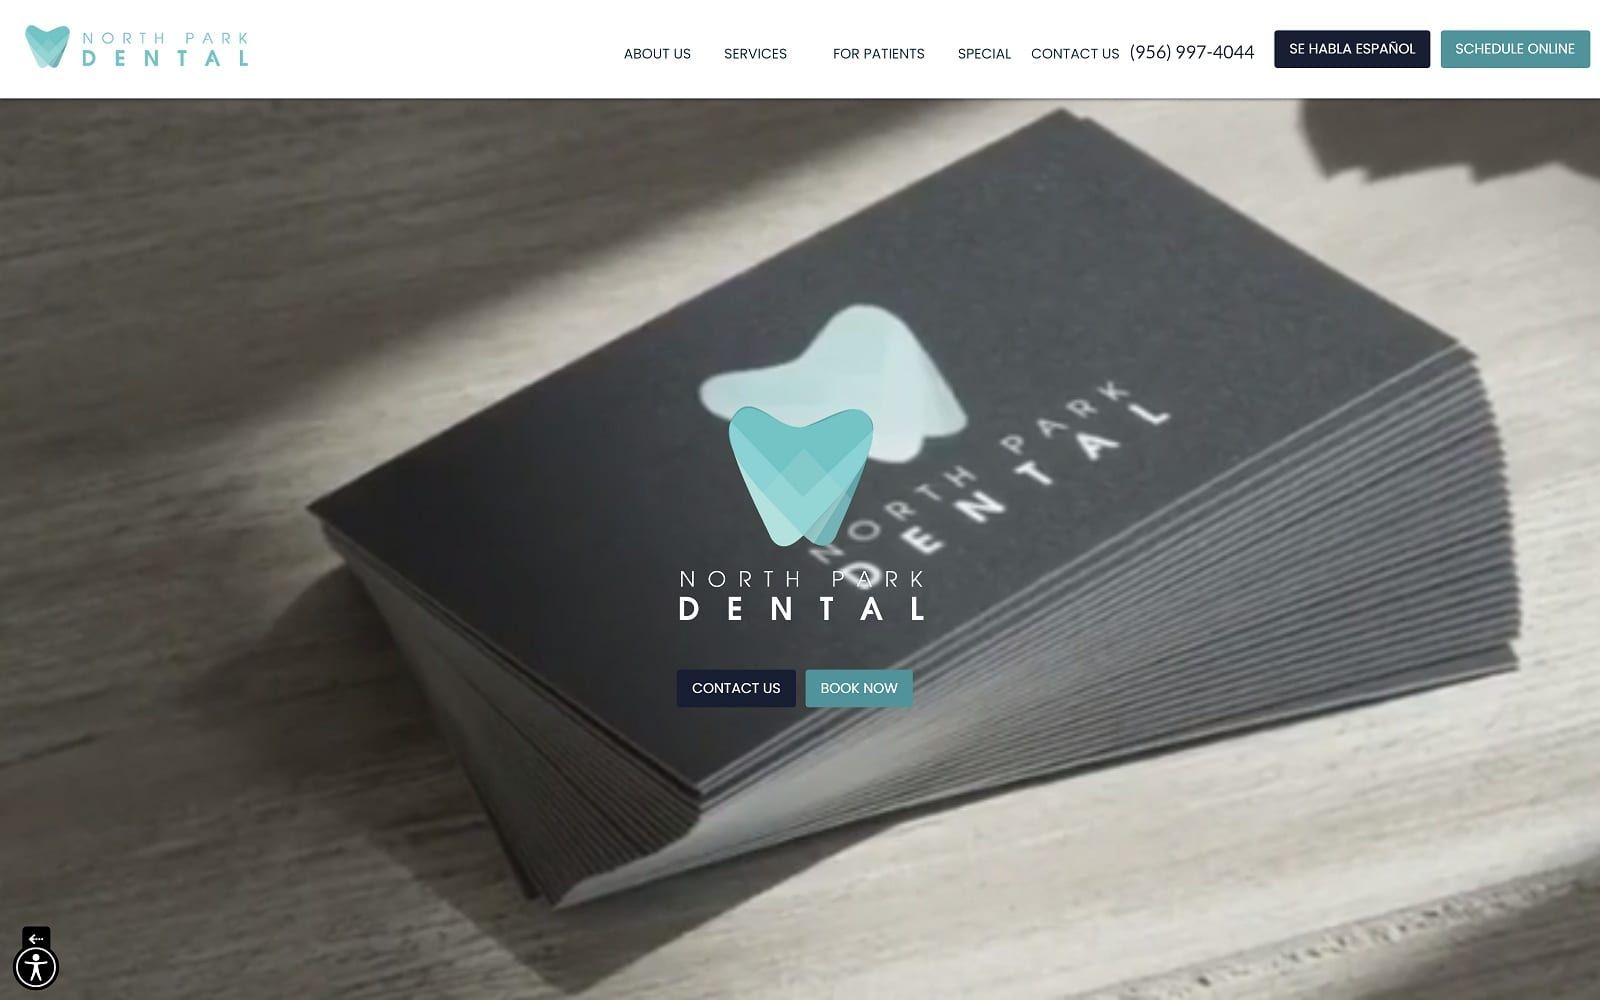 The screenshot of north park dental northparkdentalrgv. Com website